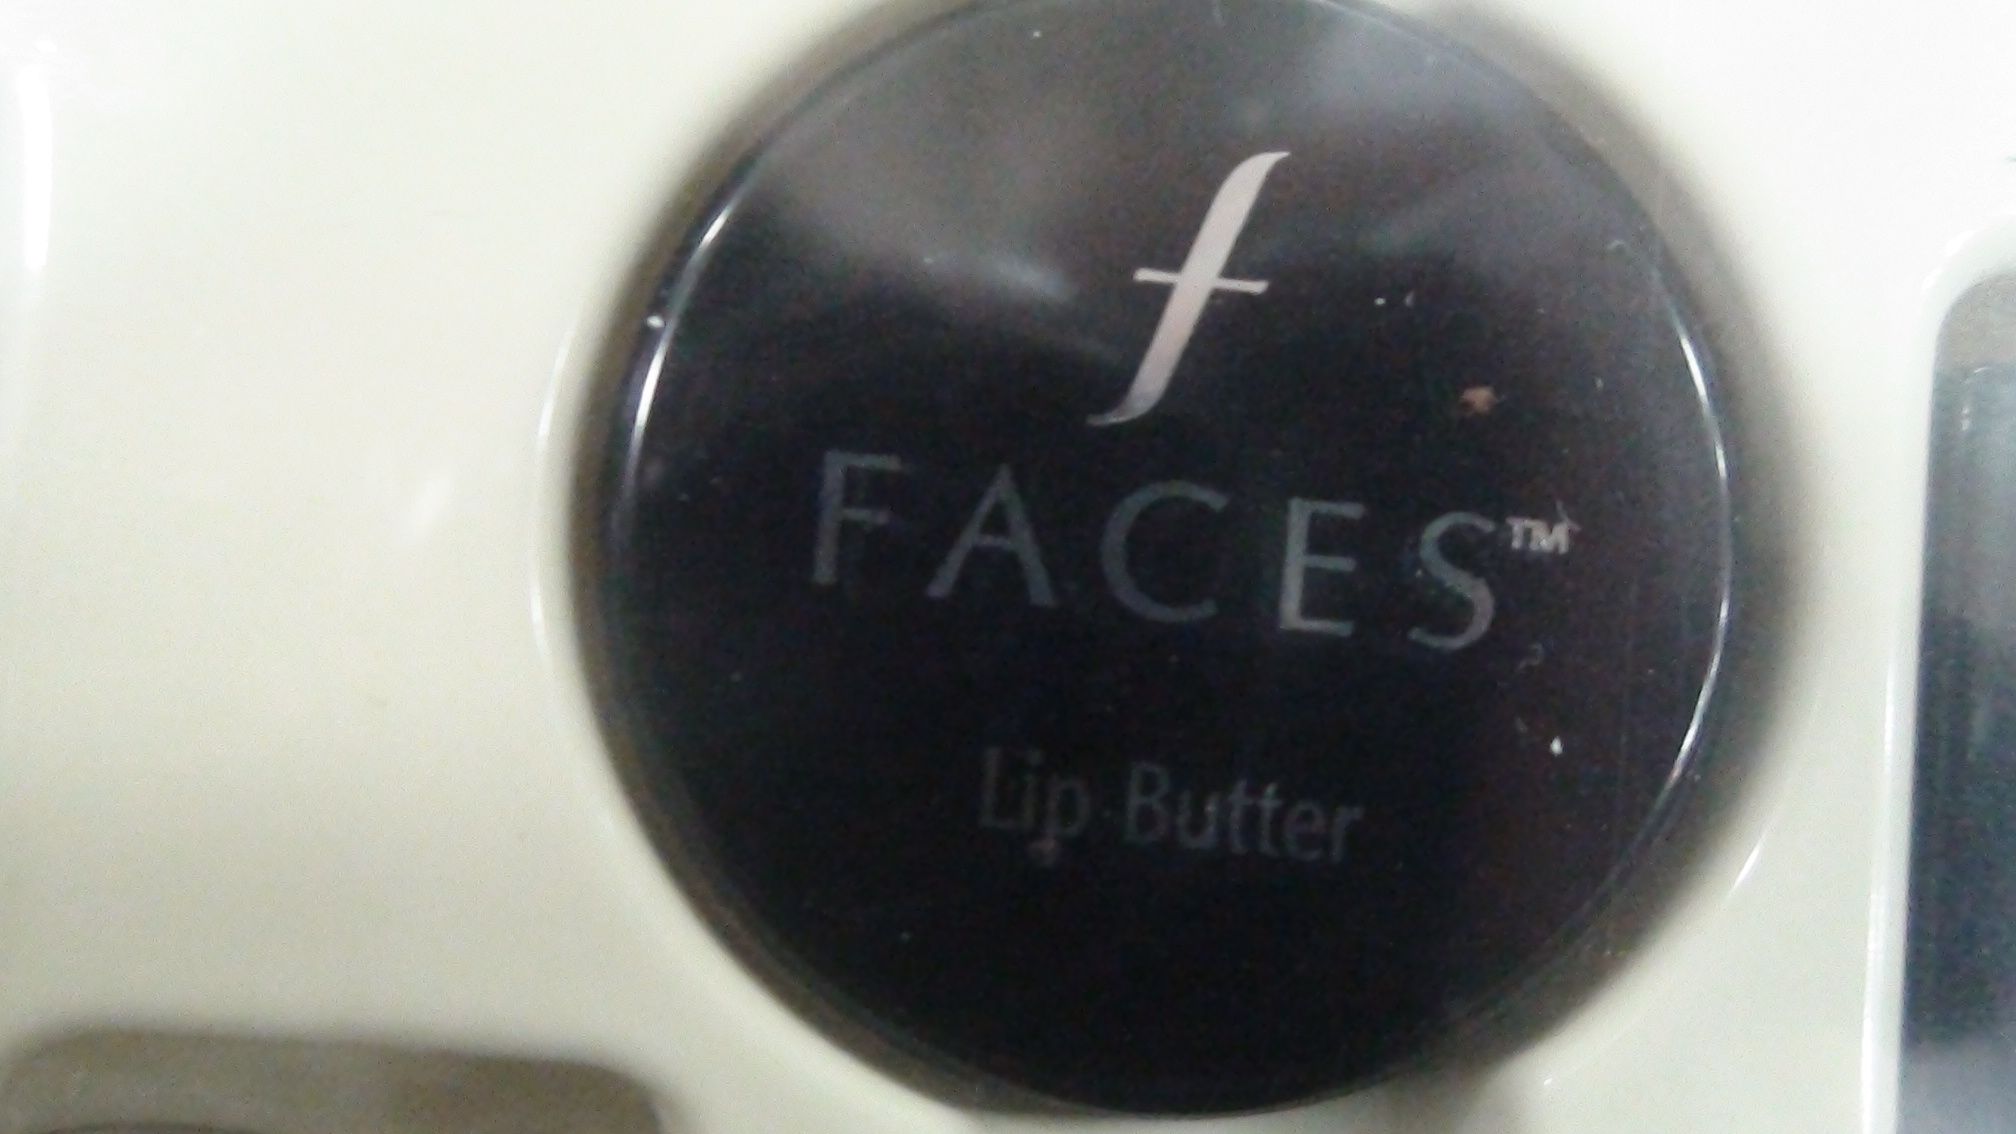 Faces lip delicious lip balm